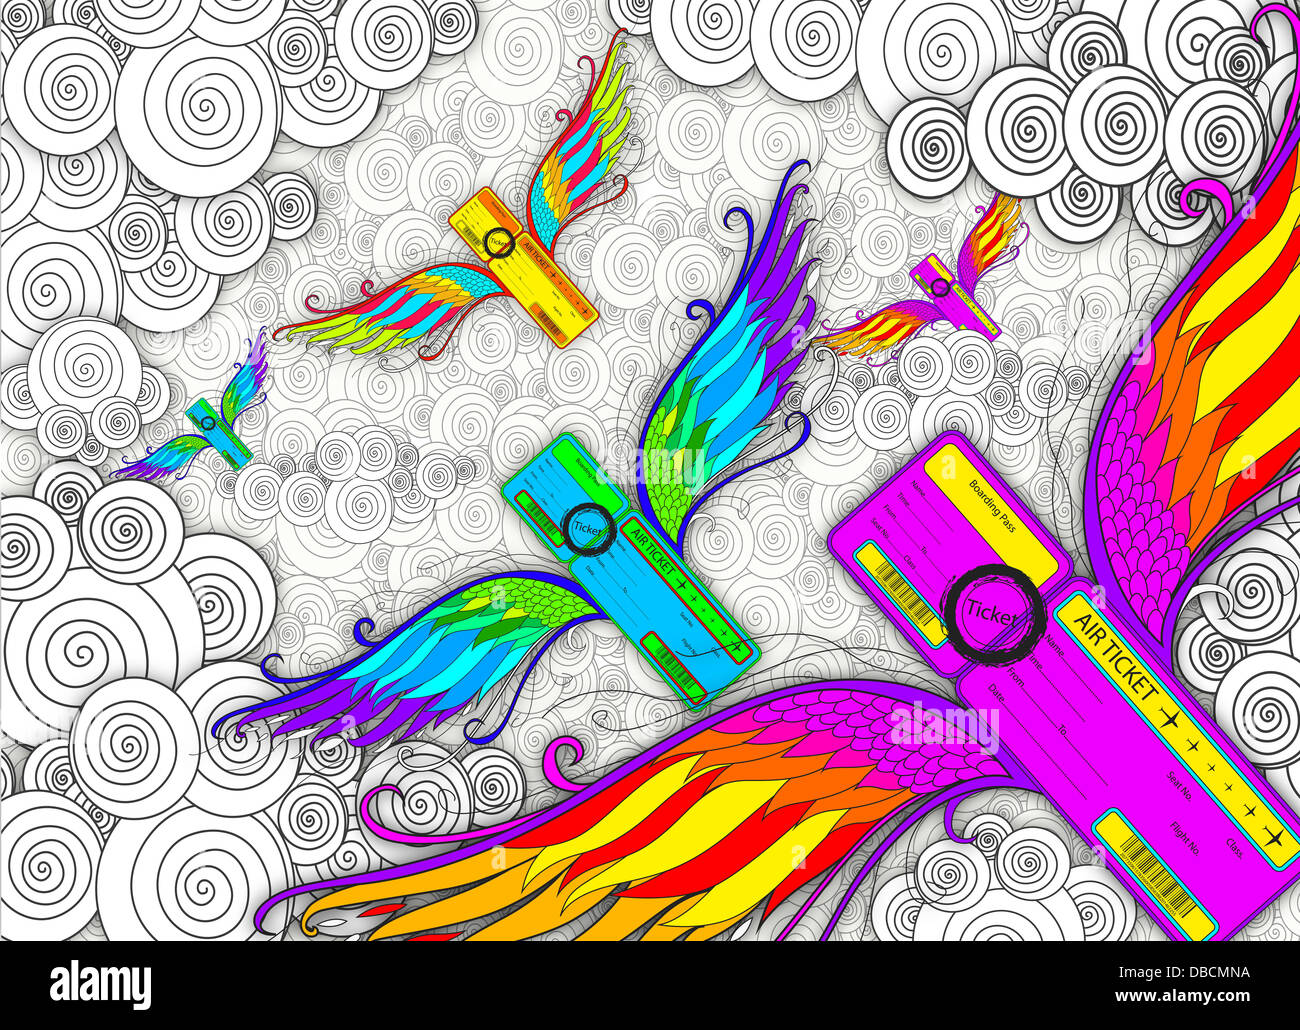 Imagen ilustrativa de las tarjetas de embarque con alas que representan los viajes aéreos Foto de stock